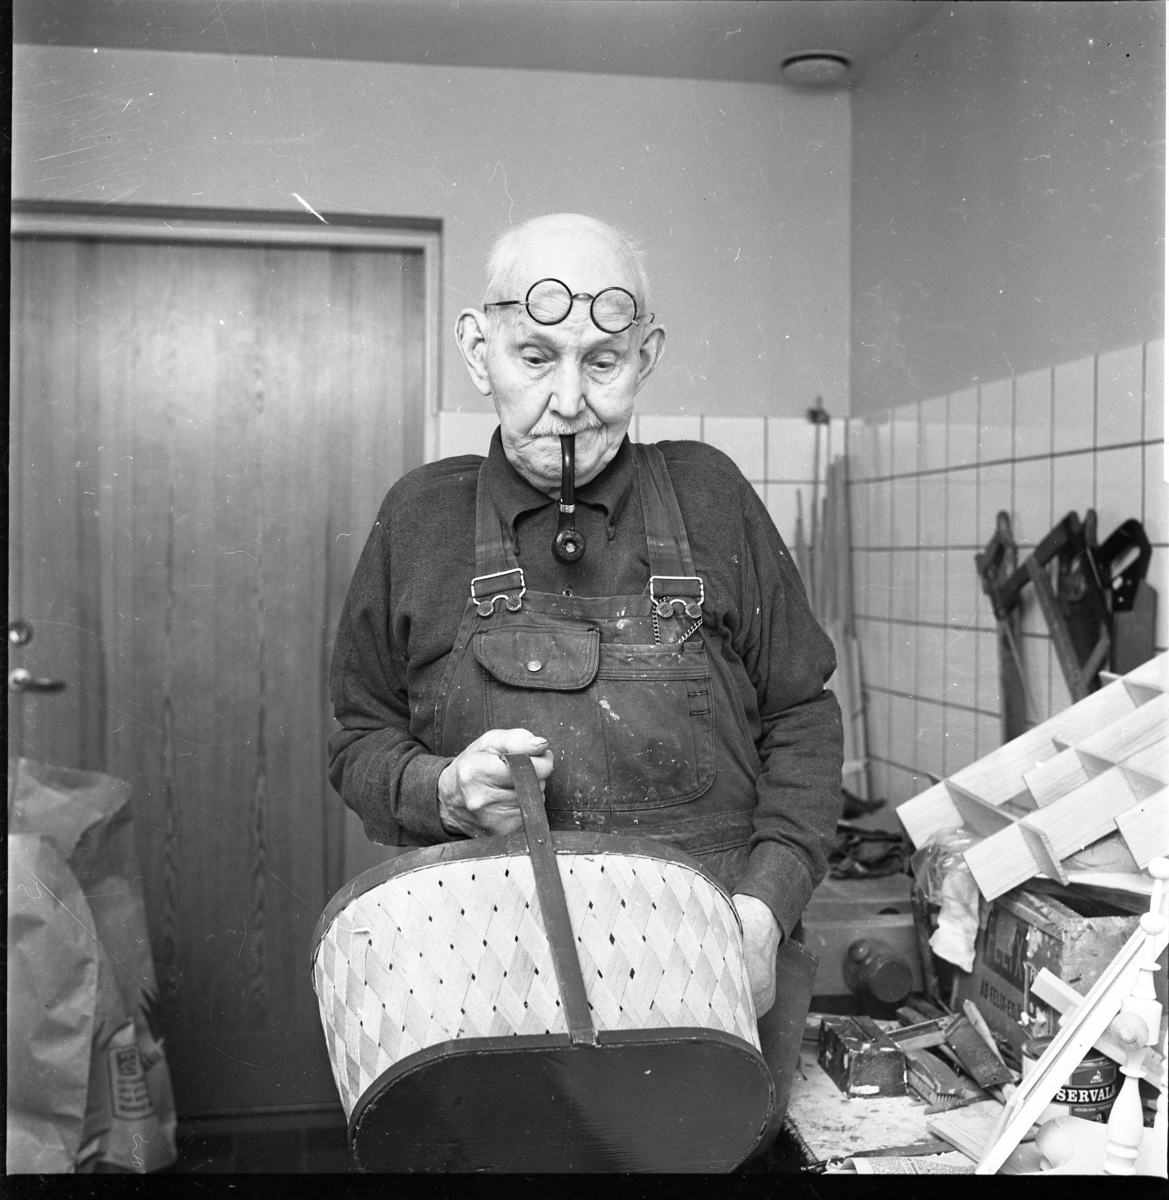 Korgmakaren Emil Lund, 91 år, står i snickarbyxor med runda glasögon uppdragna i pannan och pipa i munnen. Han håller en korg i en handen och tittar ned mot den.